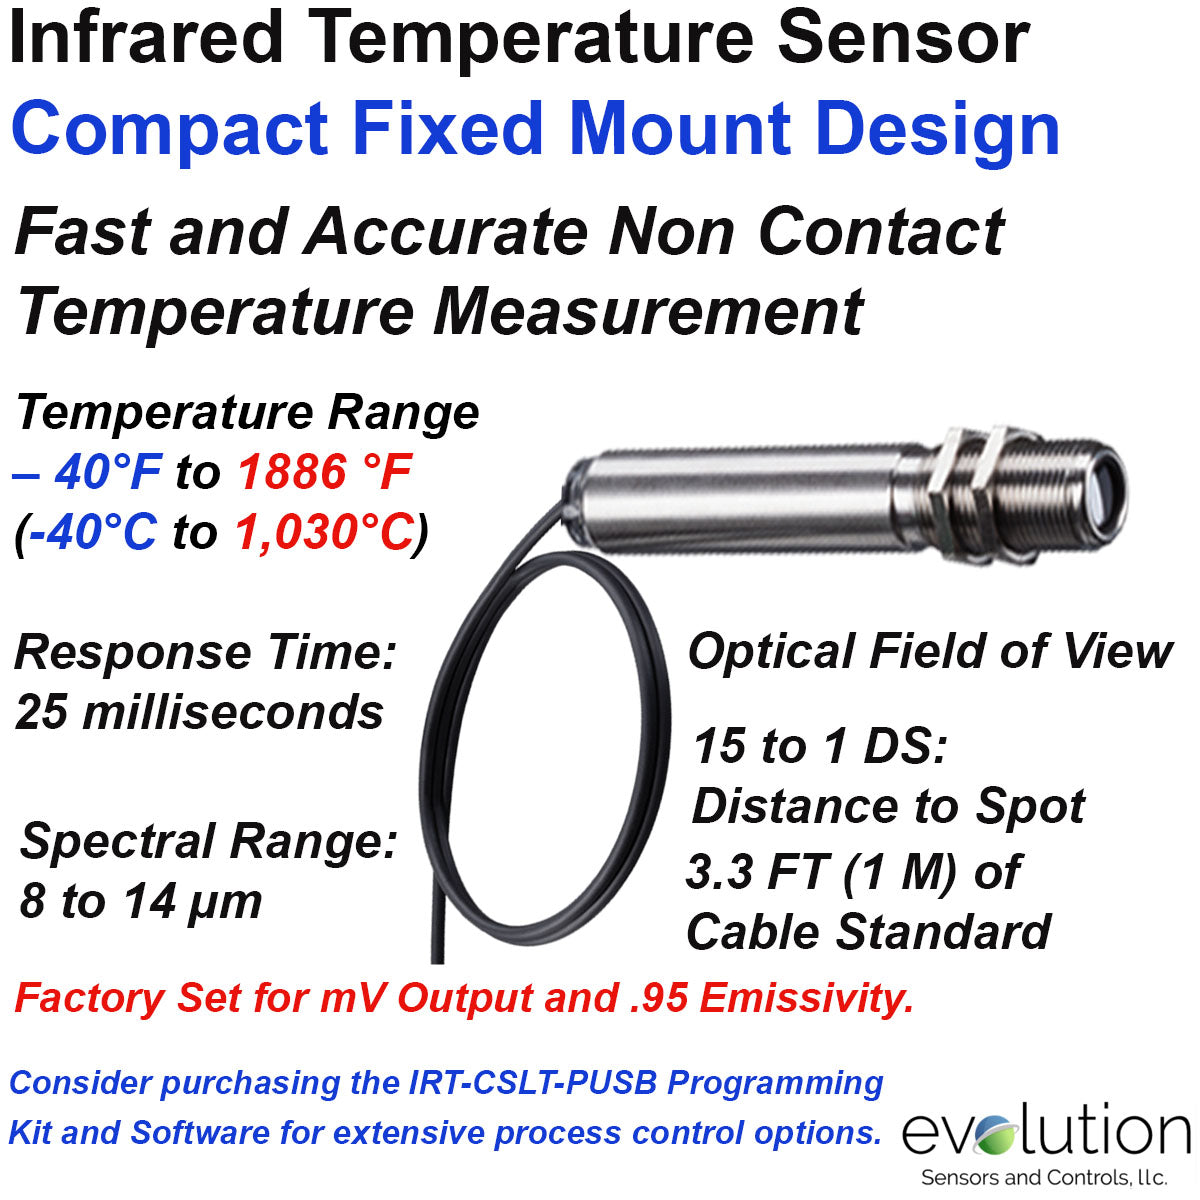 Infrared Temperature Sensors